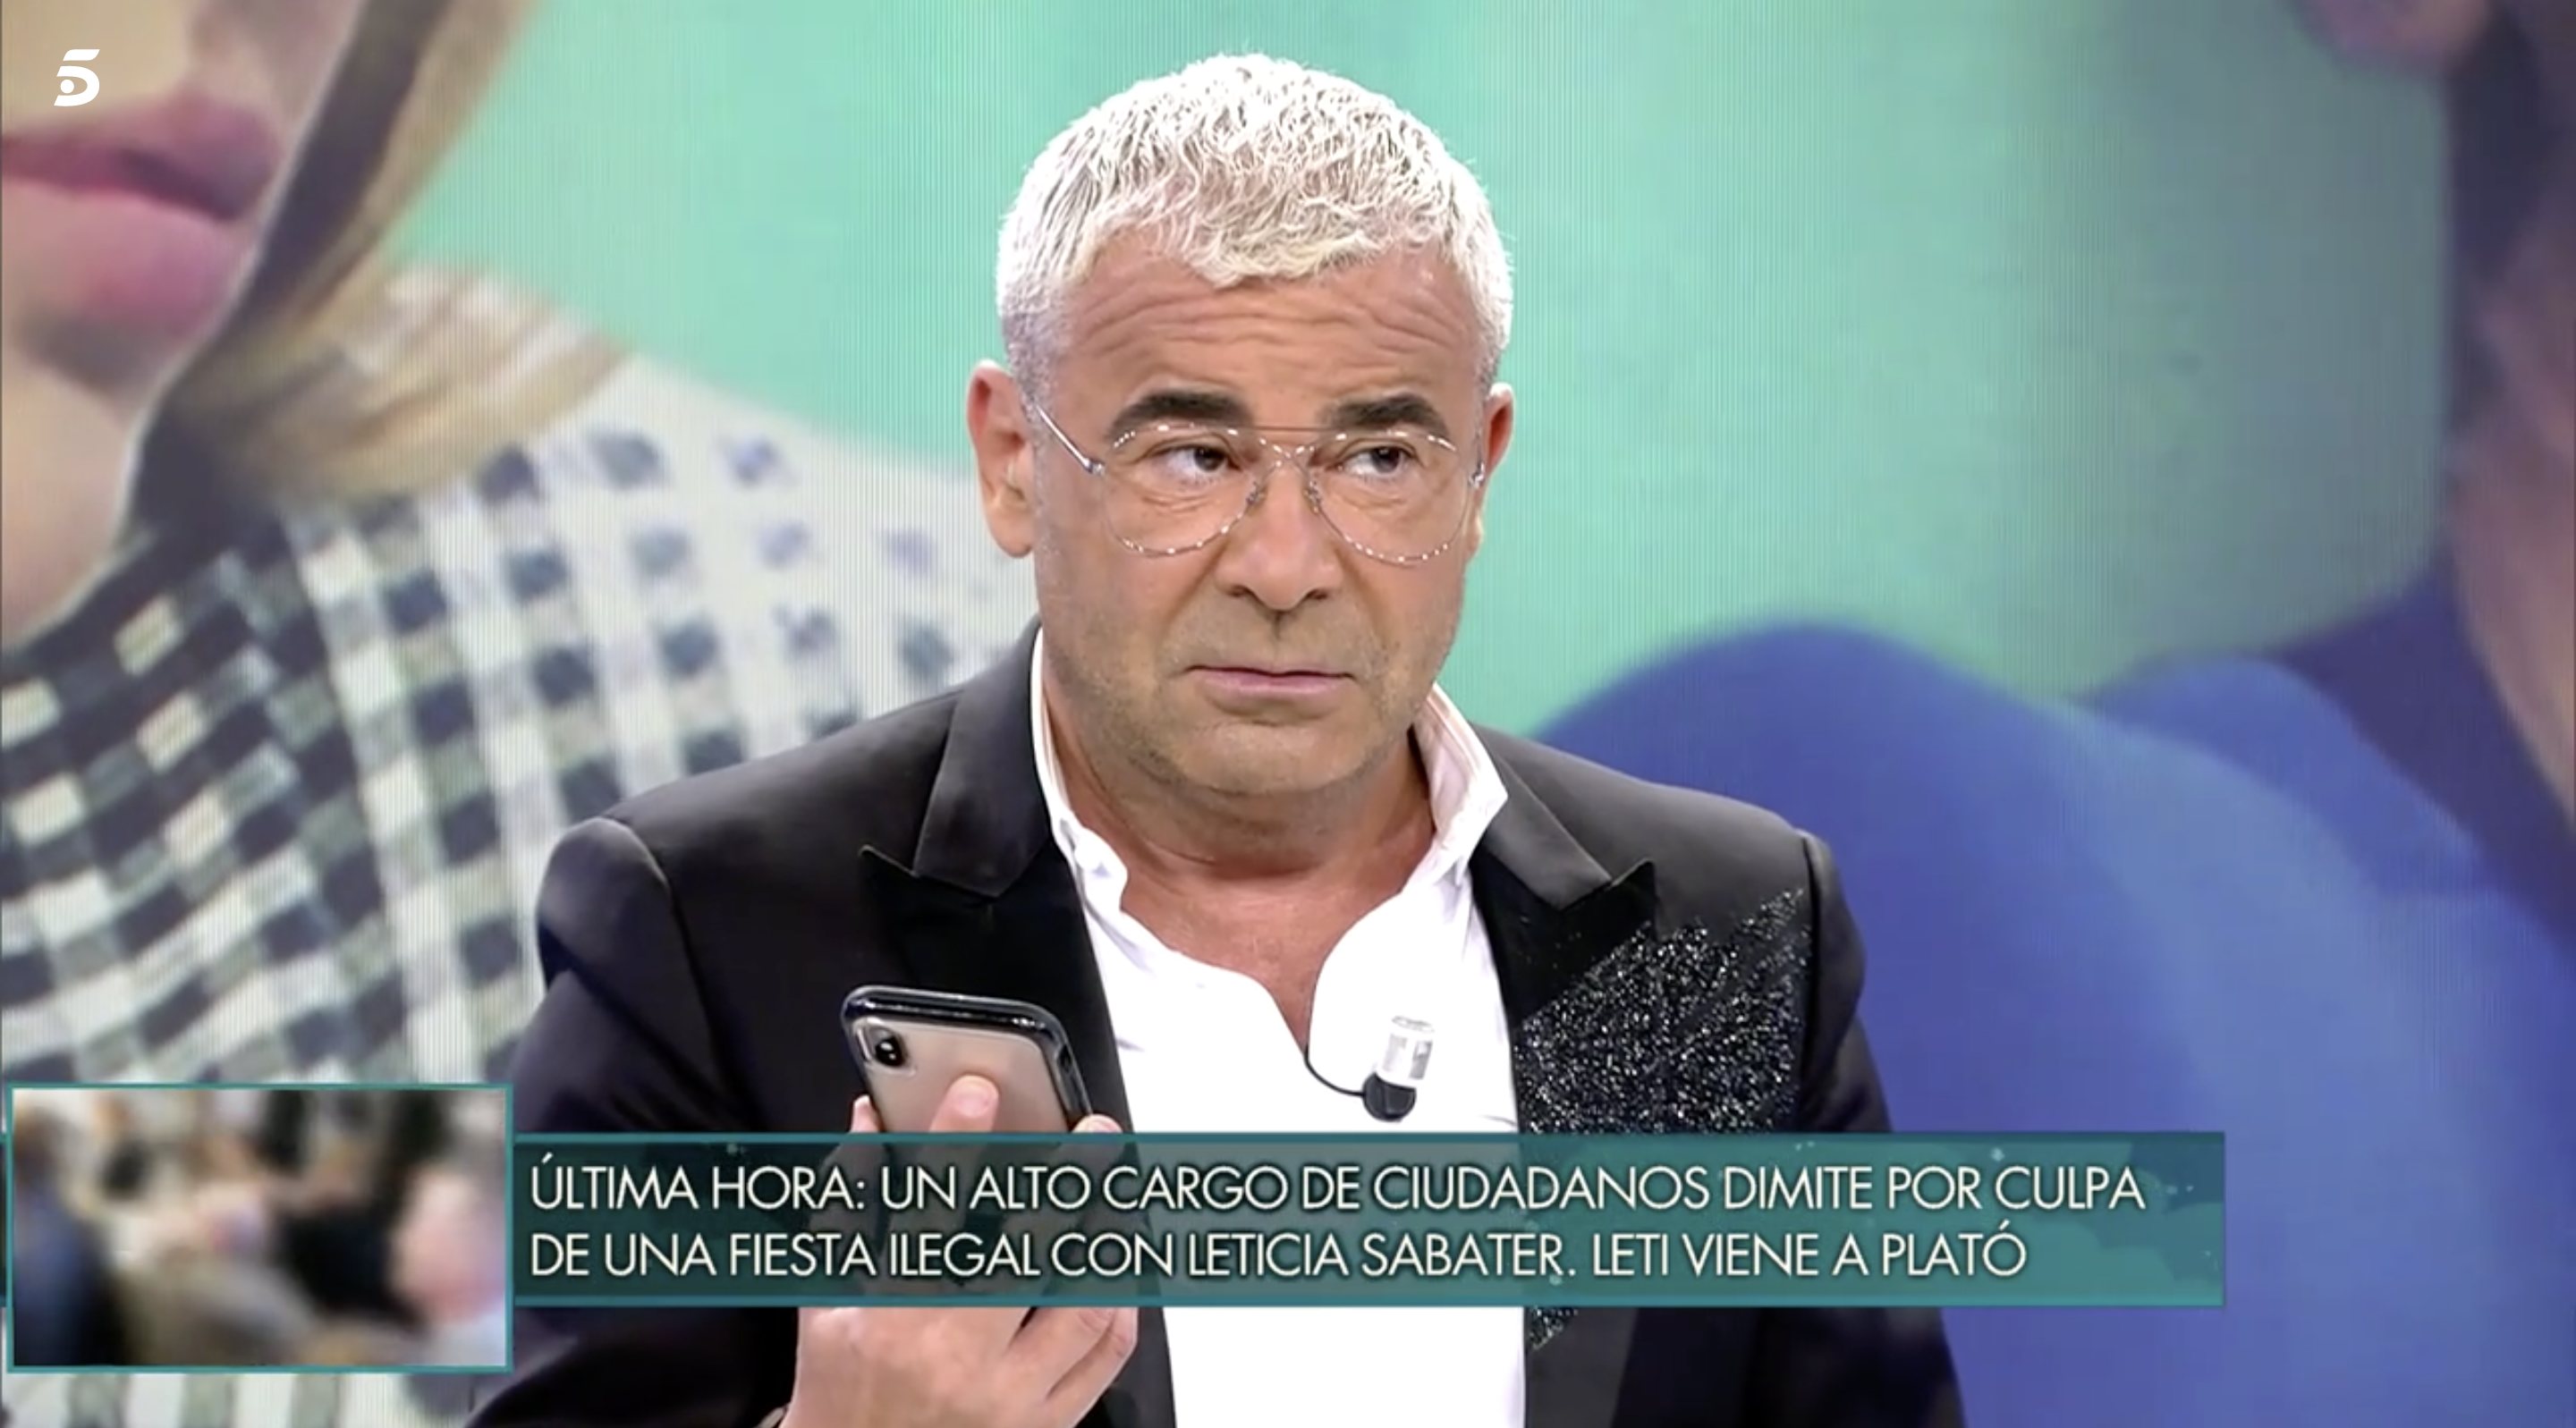 Antonio David pidió 60 mil euros por contar lo ocurrido, según Carlota Corredera | Foto: Telecinco.es